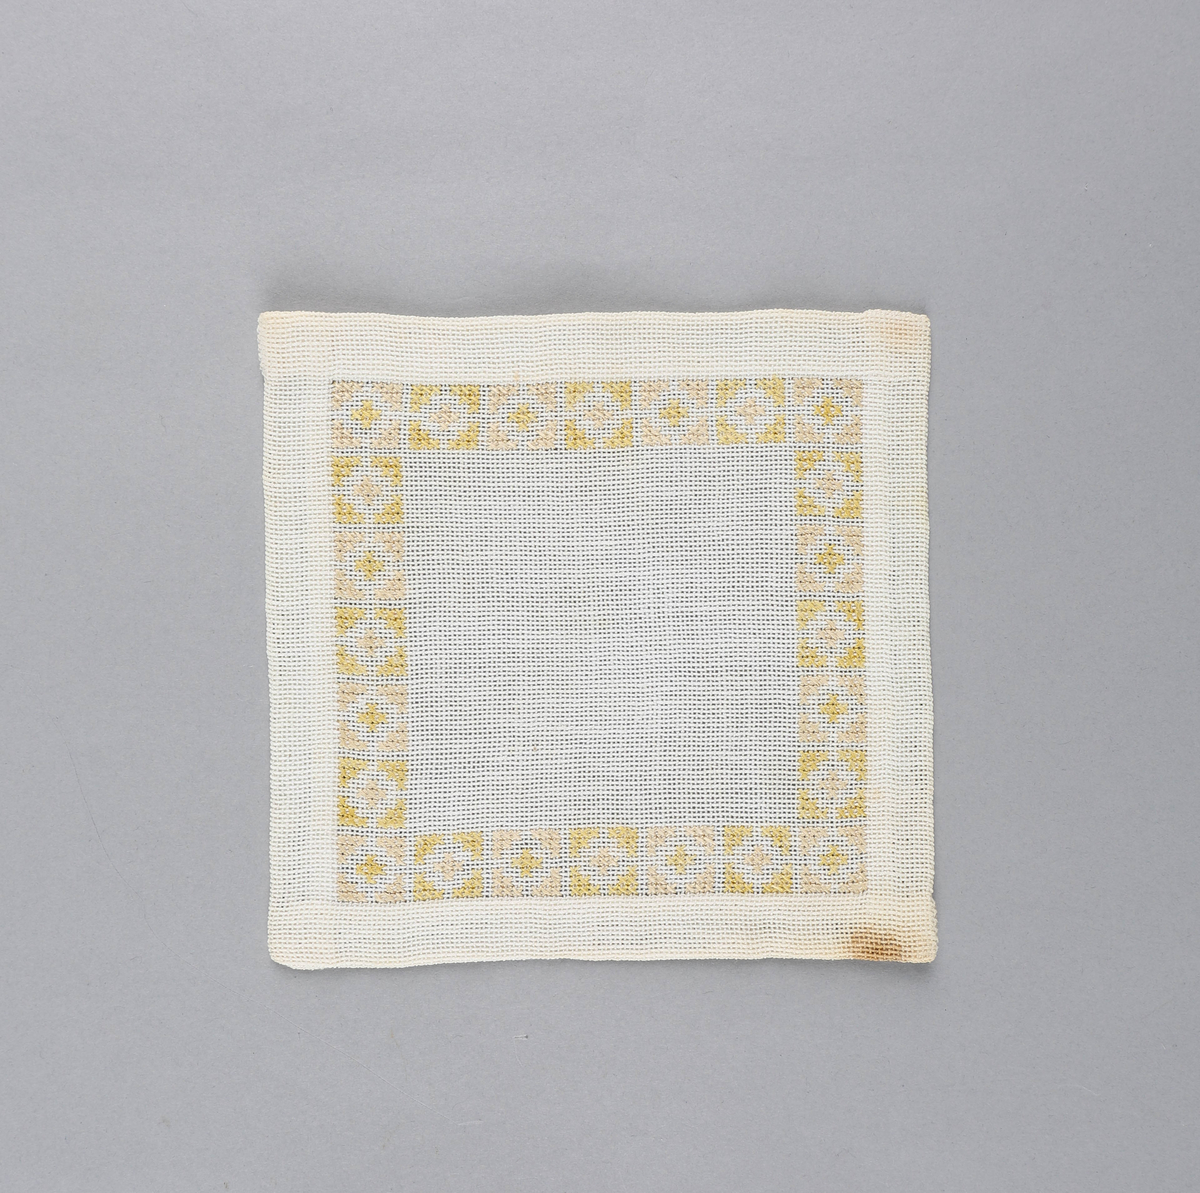 Tilnærmet kvadratisk dekkebrikke i hvitt tekstil med brodert bord langs brettekanten. Broderiet består av korssting av gul og rosa tråd i geometrisk mønster.
